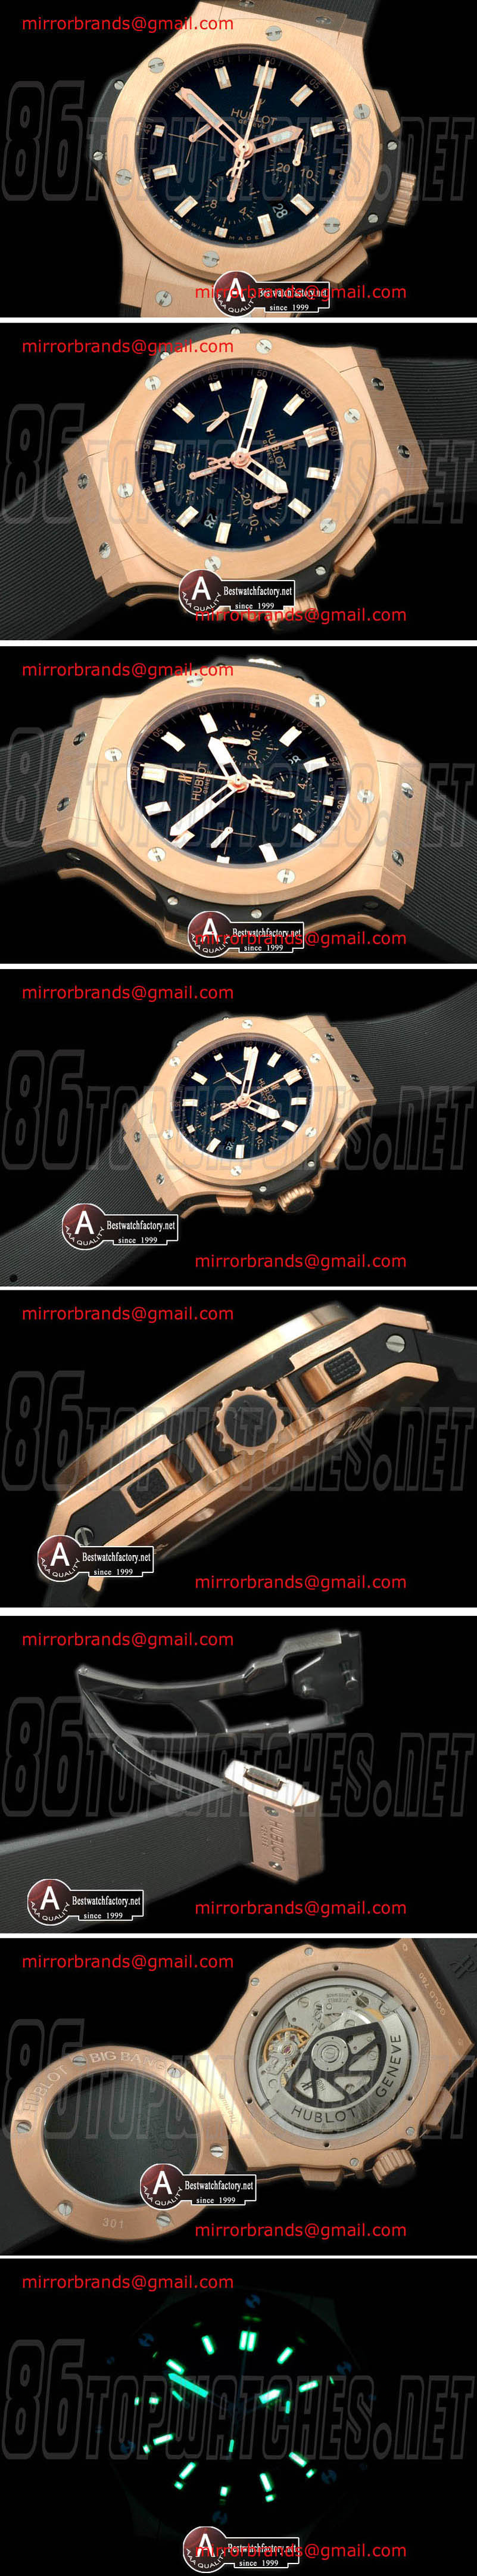 Luxury Hublot Big Bang Evolution Rose Gold/RoseGold/Leather Black A-7750 28800 bph